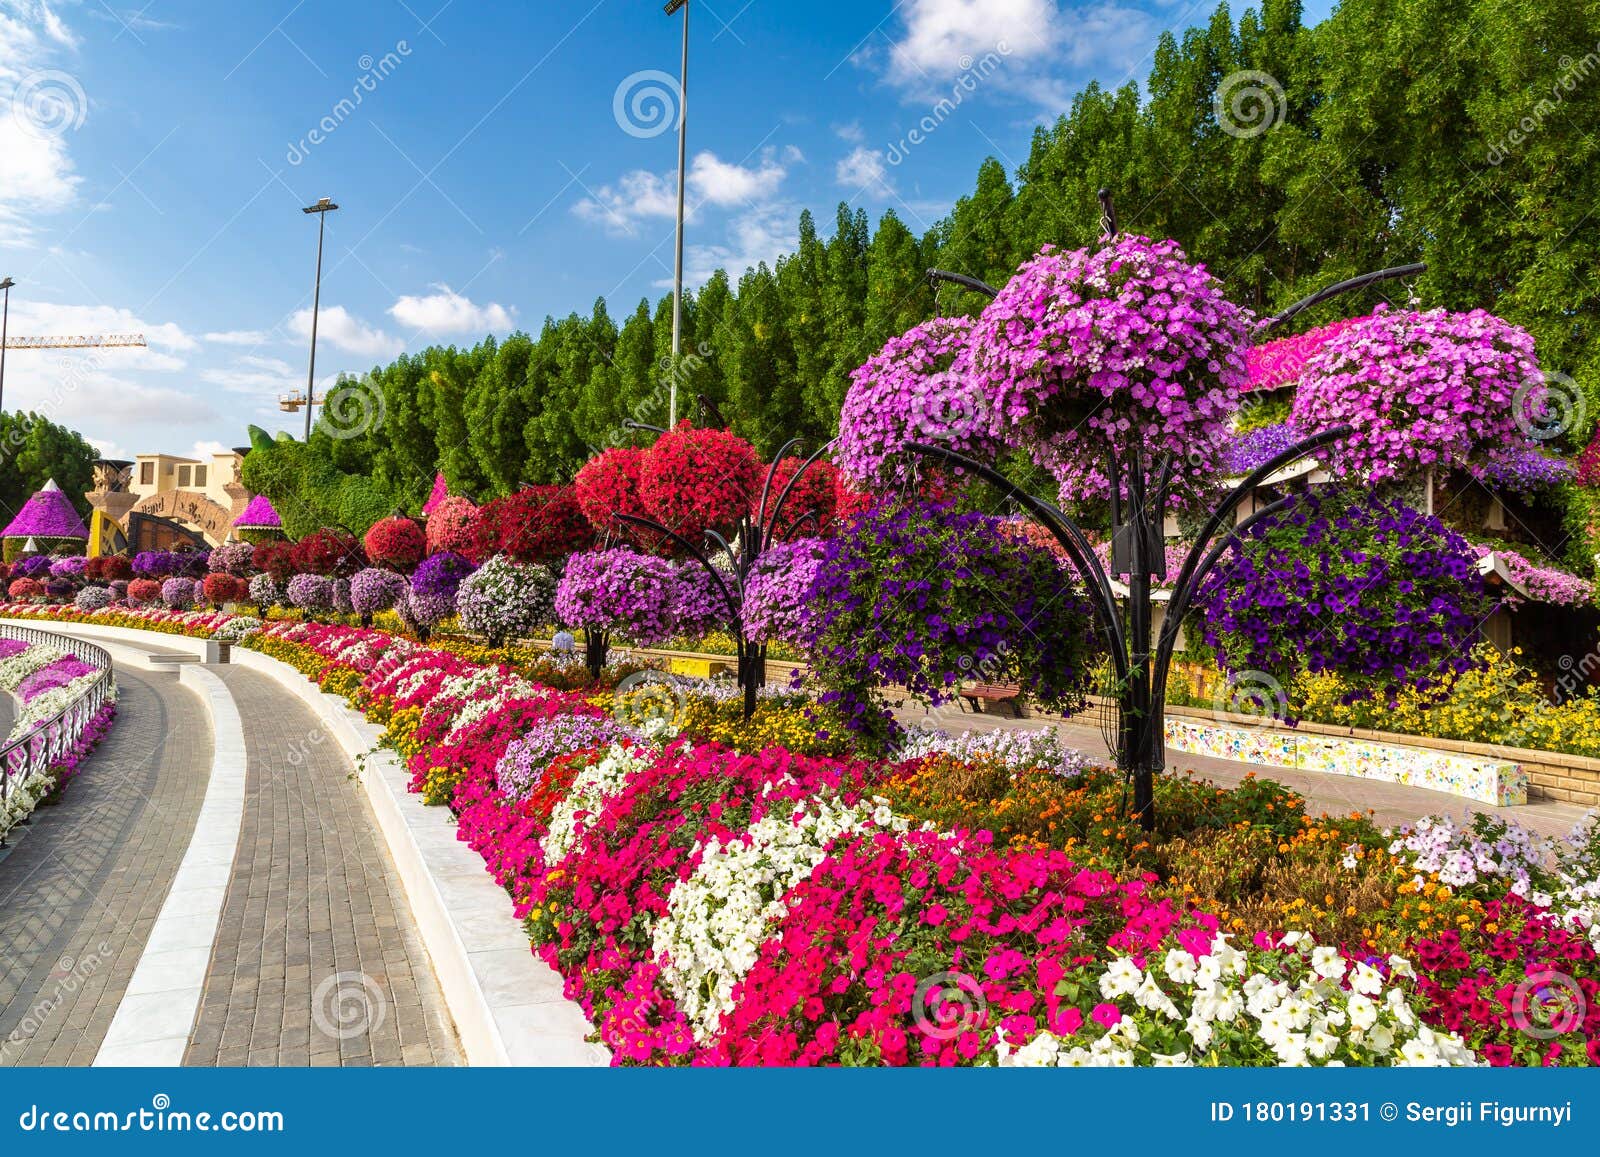 Dubai Miracle Garden Editorial Photo Image Of Garden 180191331